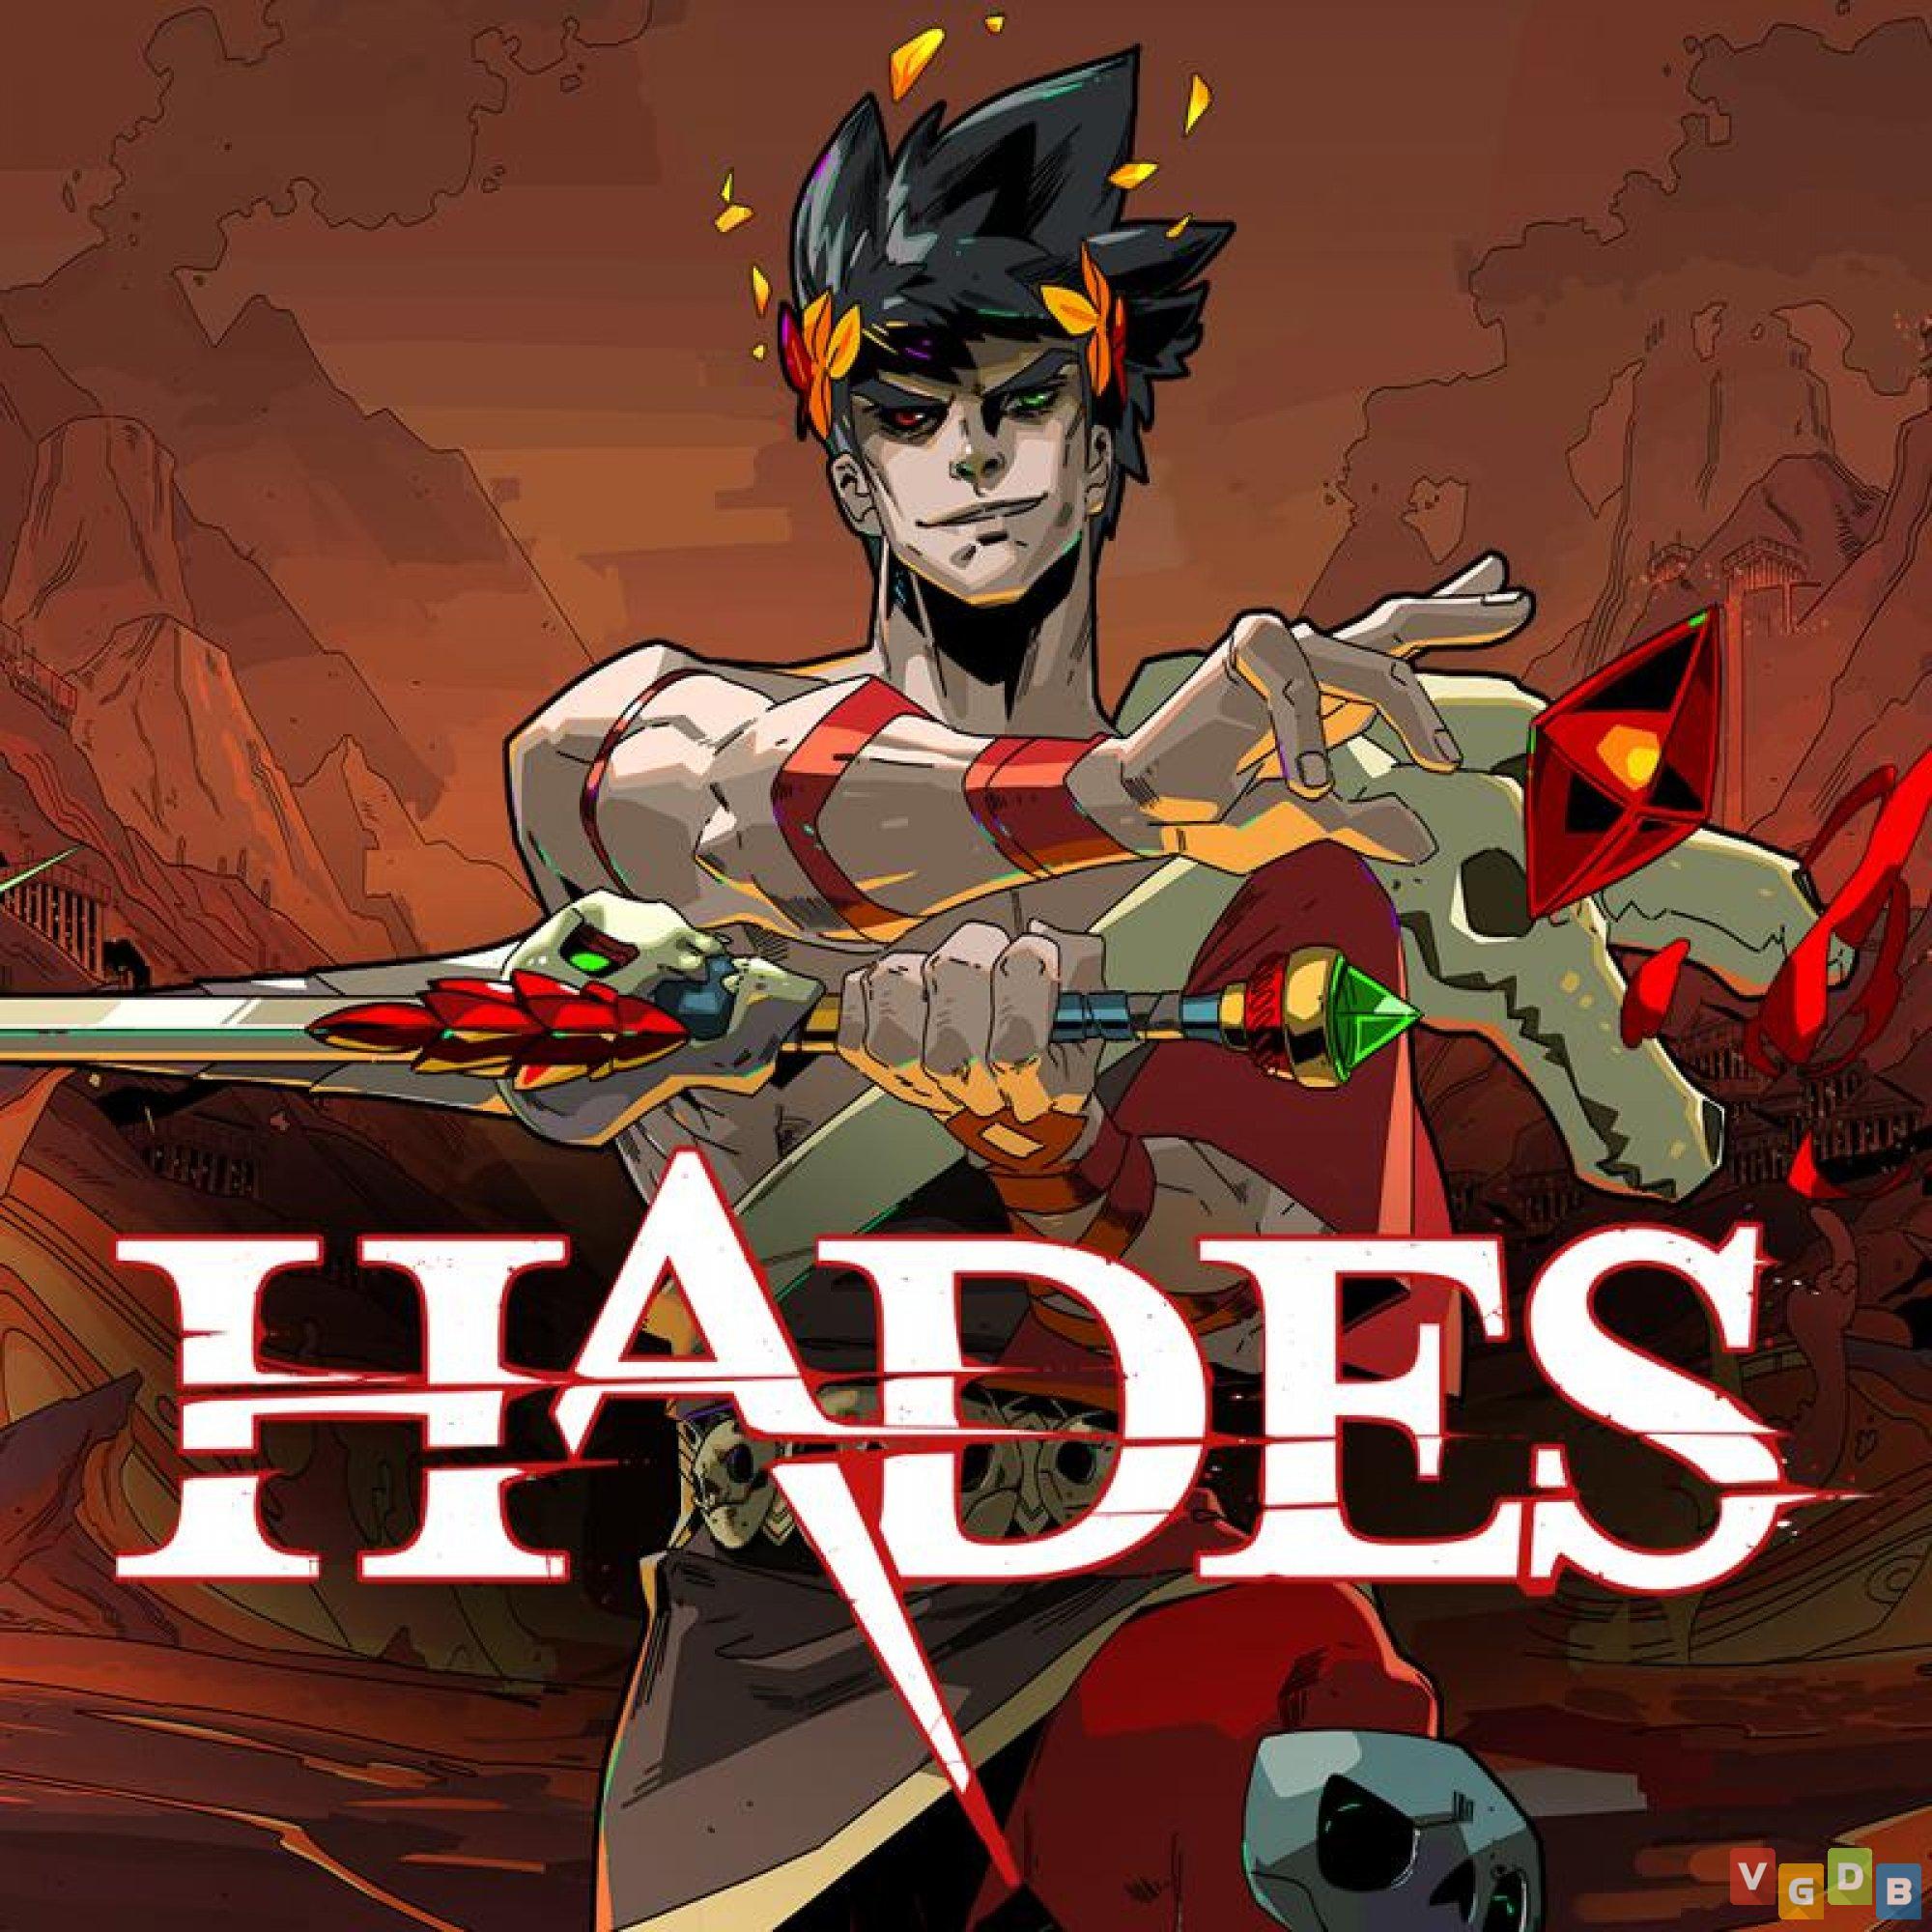 Hades - VGDB - Vídeo Game Data Base